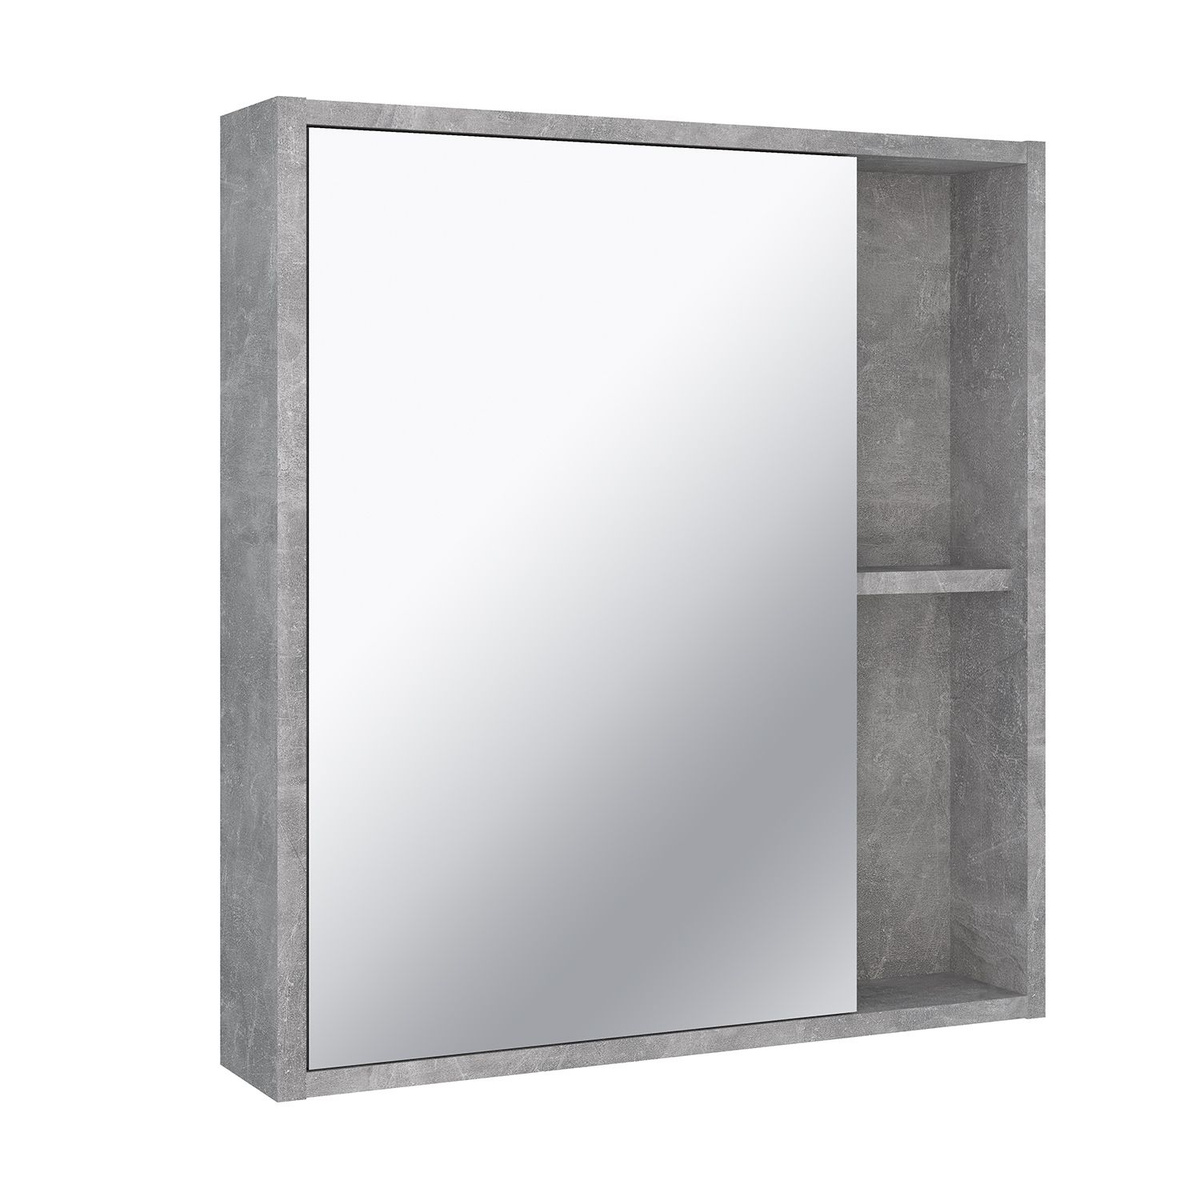 Зеркало шкаф для ванной / Runo / Эко 60 / серый бетон / универсальный / полка для